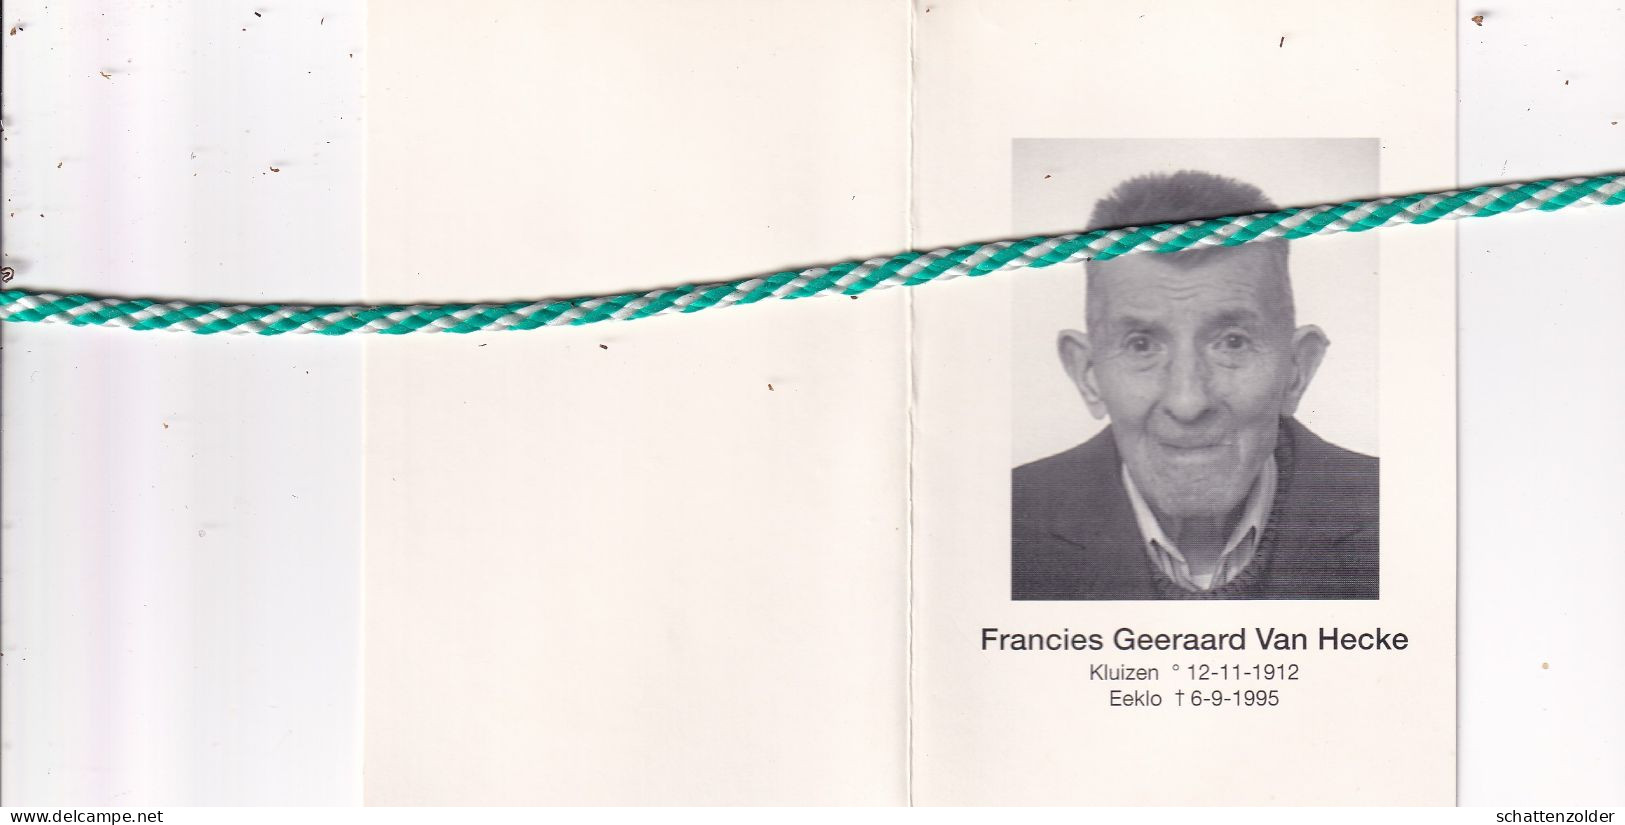 Francies Geeraard Van Hecke-De Muynck-De Baets, Kluizen 1912, Eeklo 1995. Oud-strijder 40-45; Foto - Obituary Notices